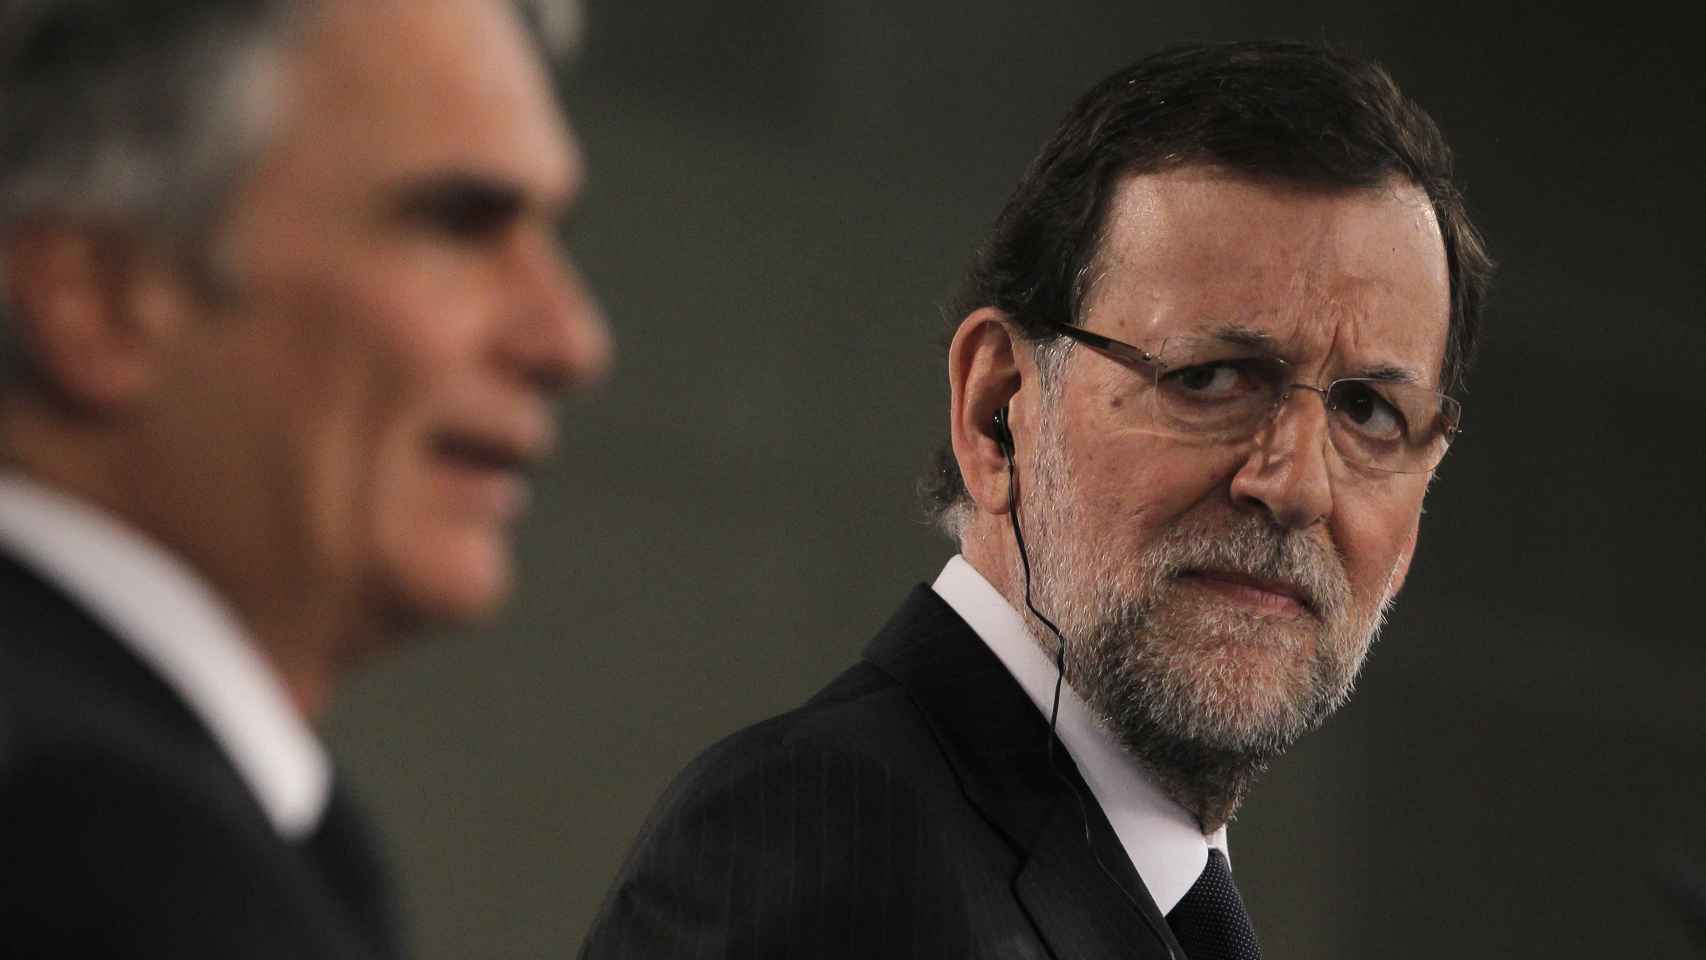 Los últimos modelos que ha lucido Rajoy, han sido de pantilla ancha y lentes al aire, sin montura